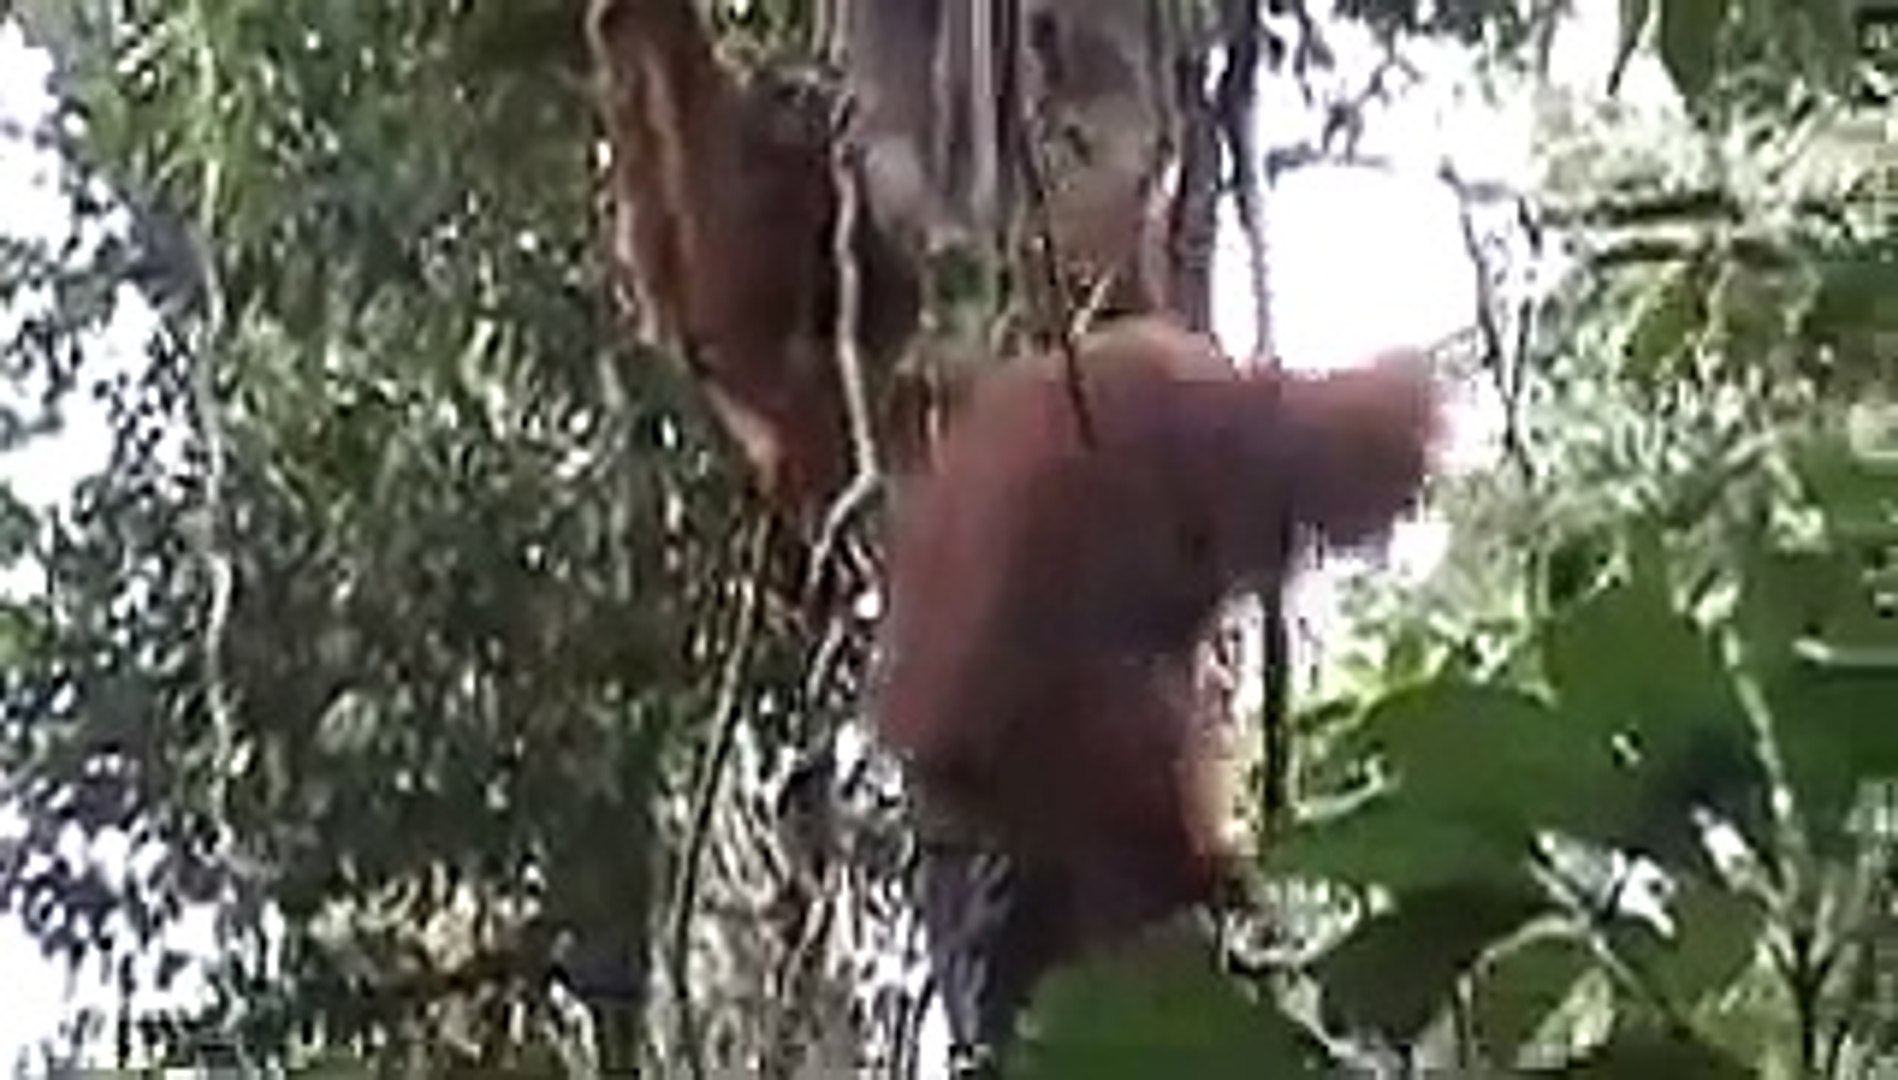 Semenggok Orangutan Sarawak Malaysia 08